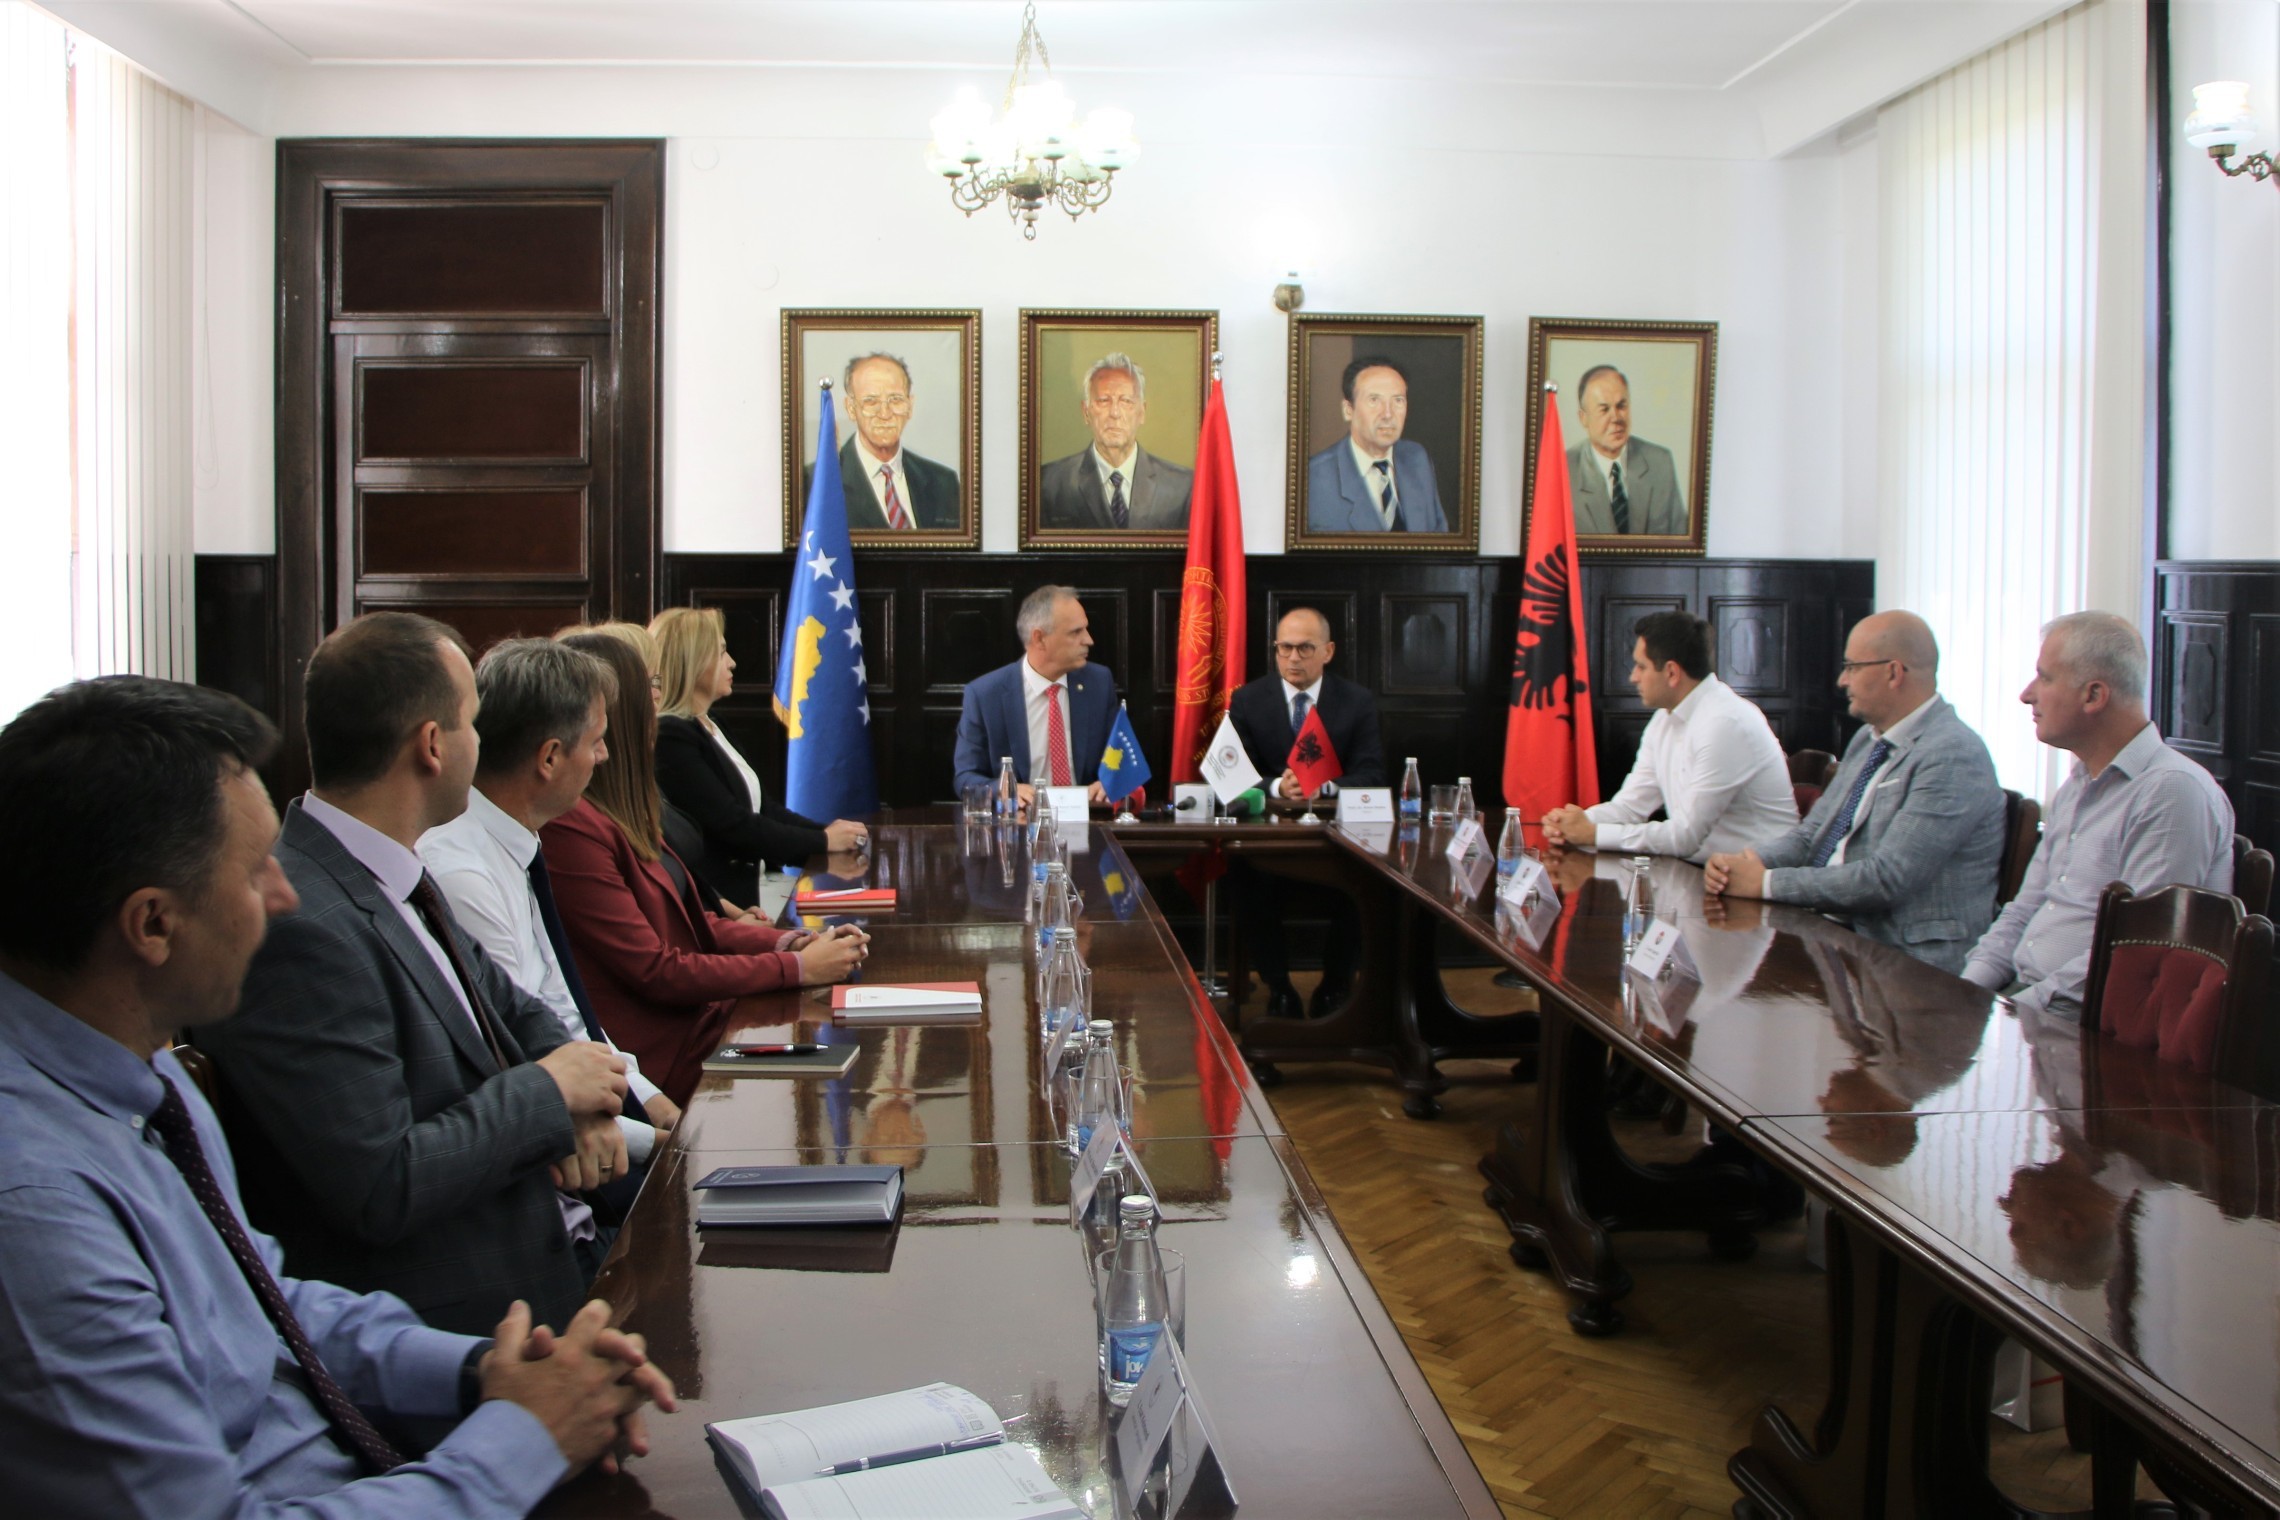  Universiteti i Prishtinës dhe ai i Tiranës nënshkruajnë marrëveshje bashkëpunimi